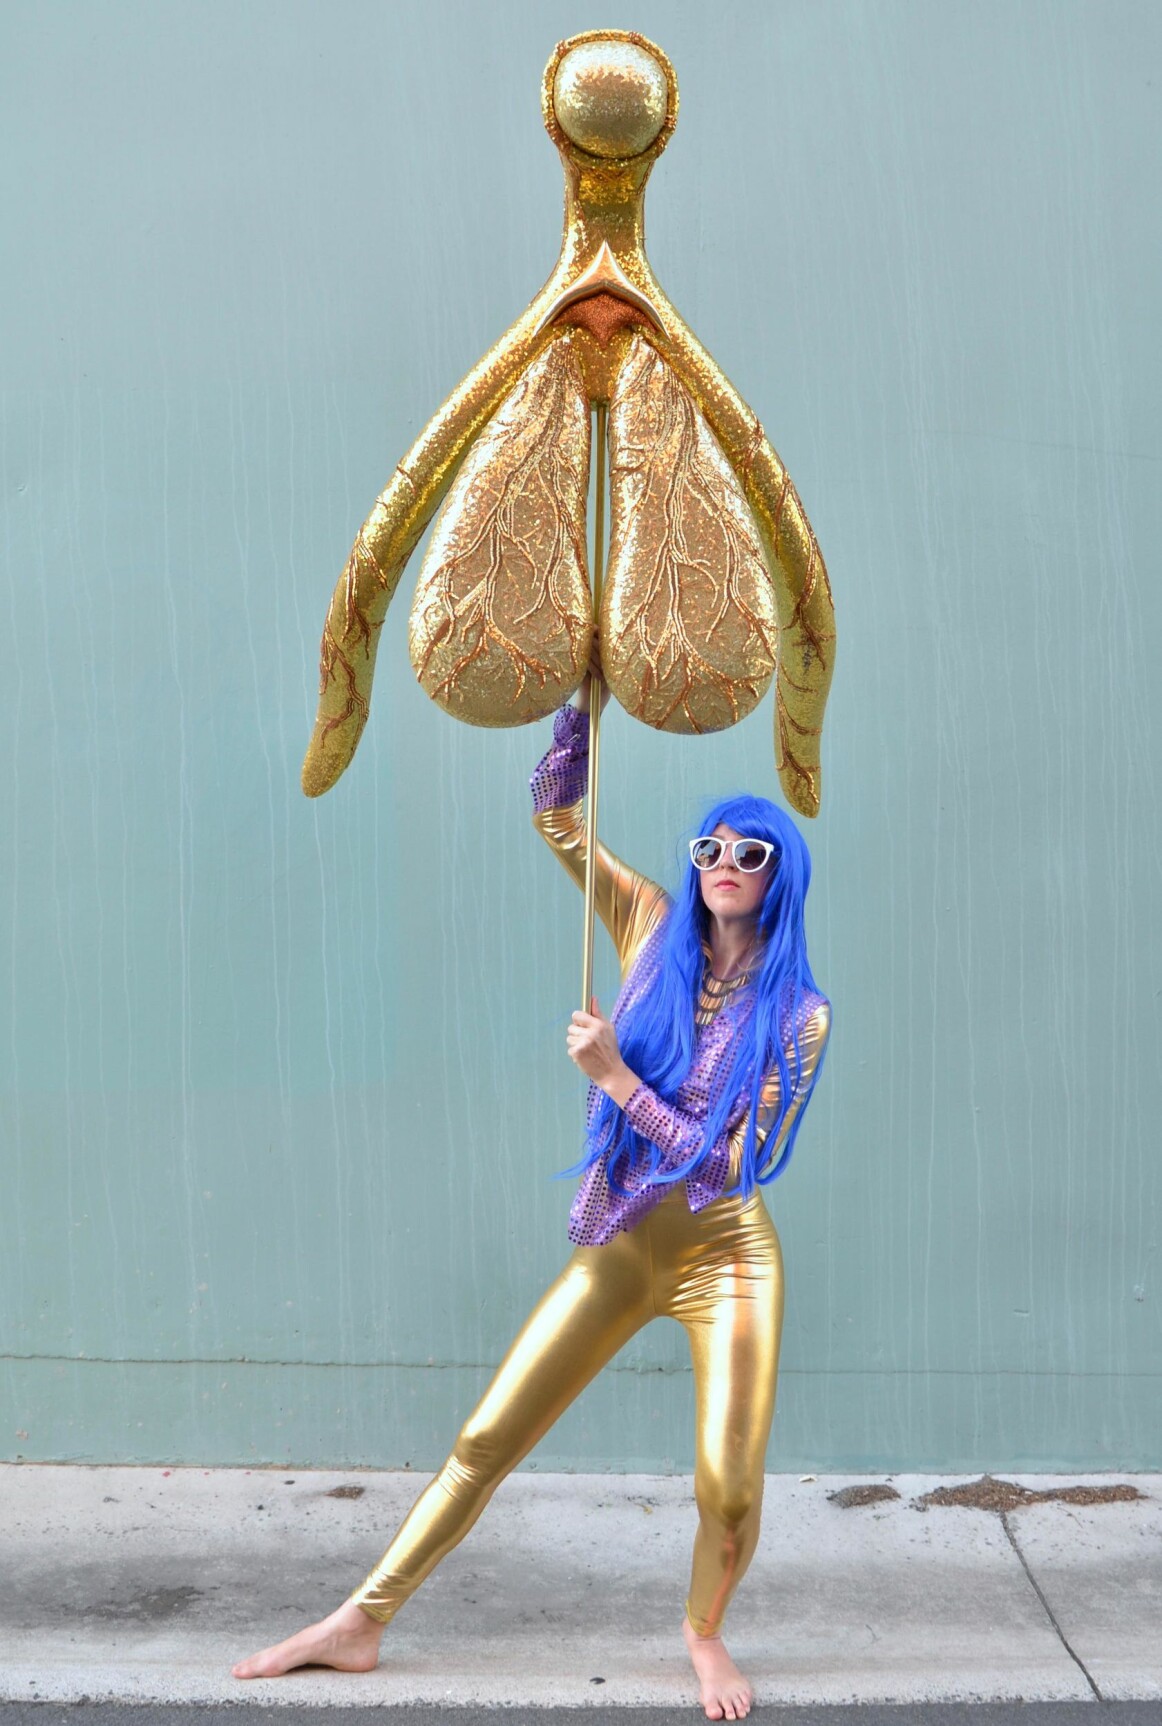 Den australske performancekunstneren Alli Sebastian
Wolf har laget kunstverket «Glitoris», en gullklitoris
i størrelse 1:100 med paljetter og glitter, fordi hun mener
uvitenheten om det kvinnelige kjønnsorganet er for stor.